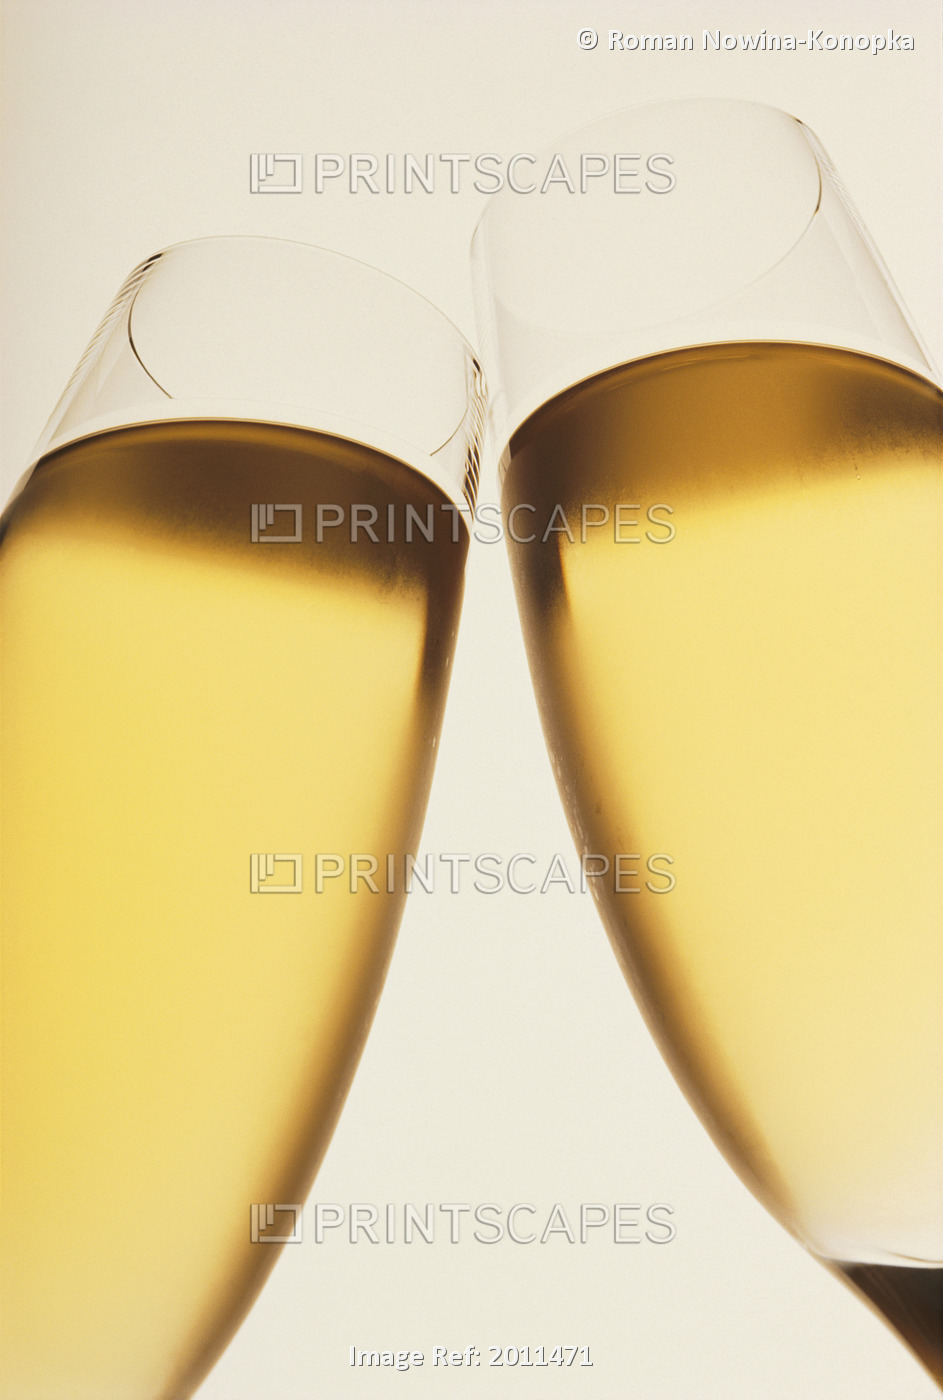 Fv2301, Roman Konopka; Champagne Glasses